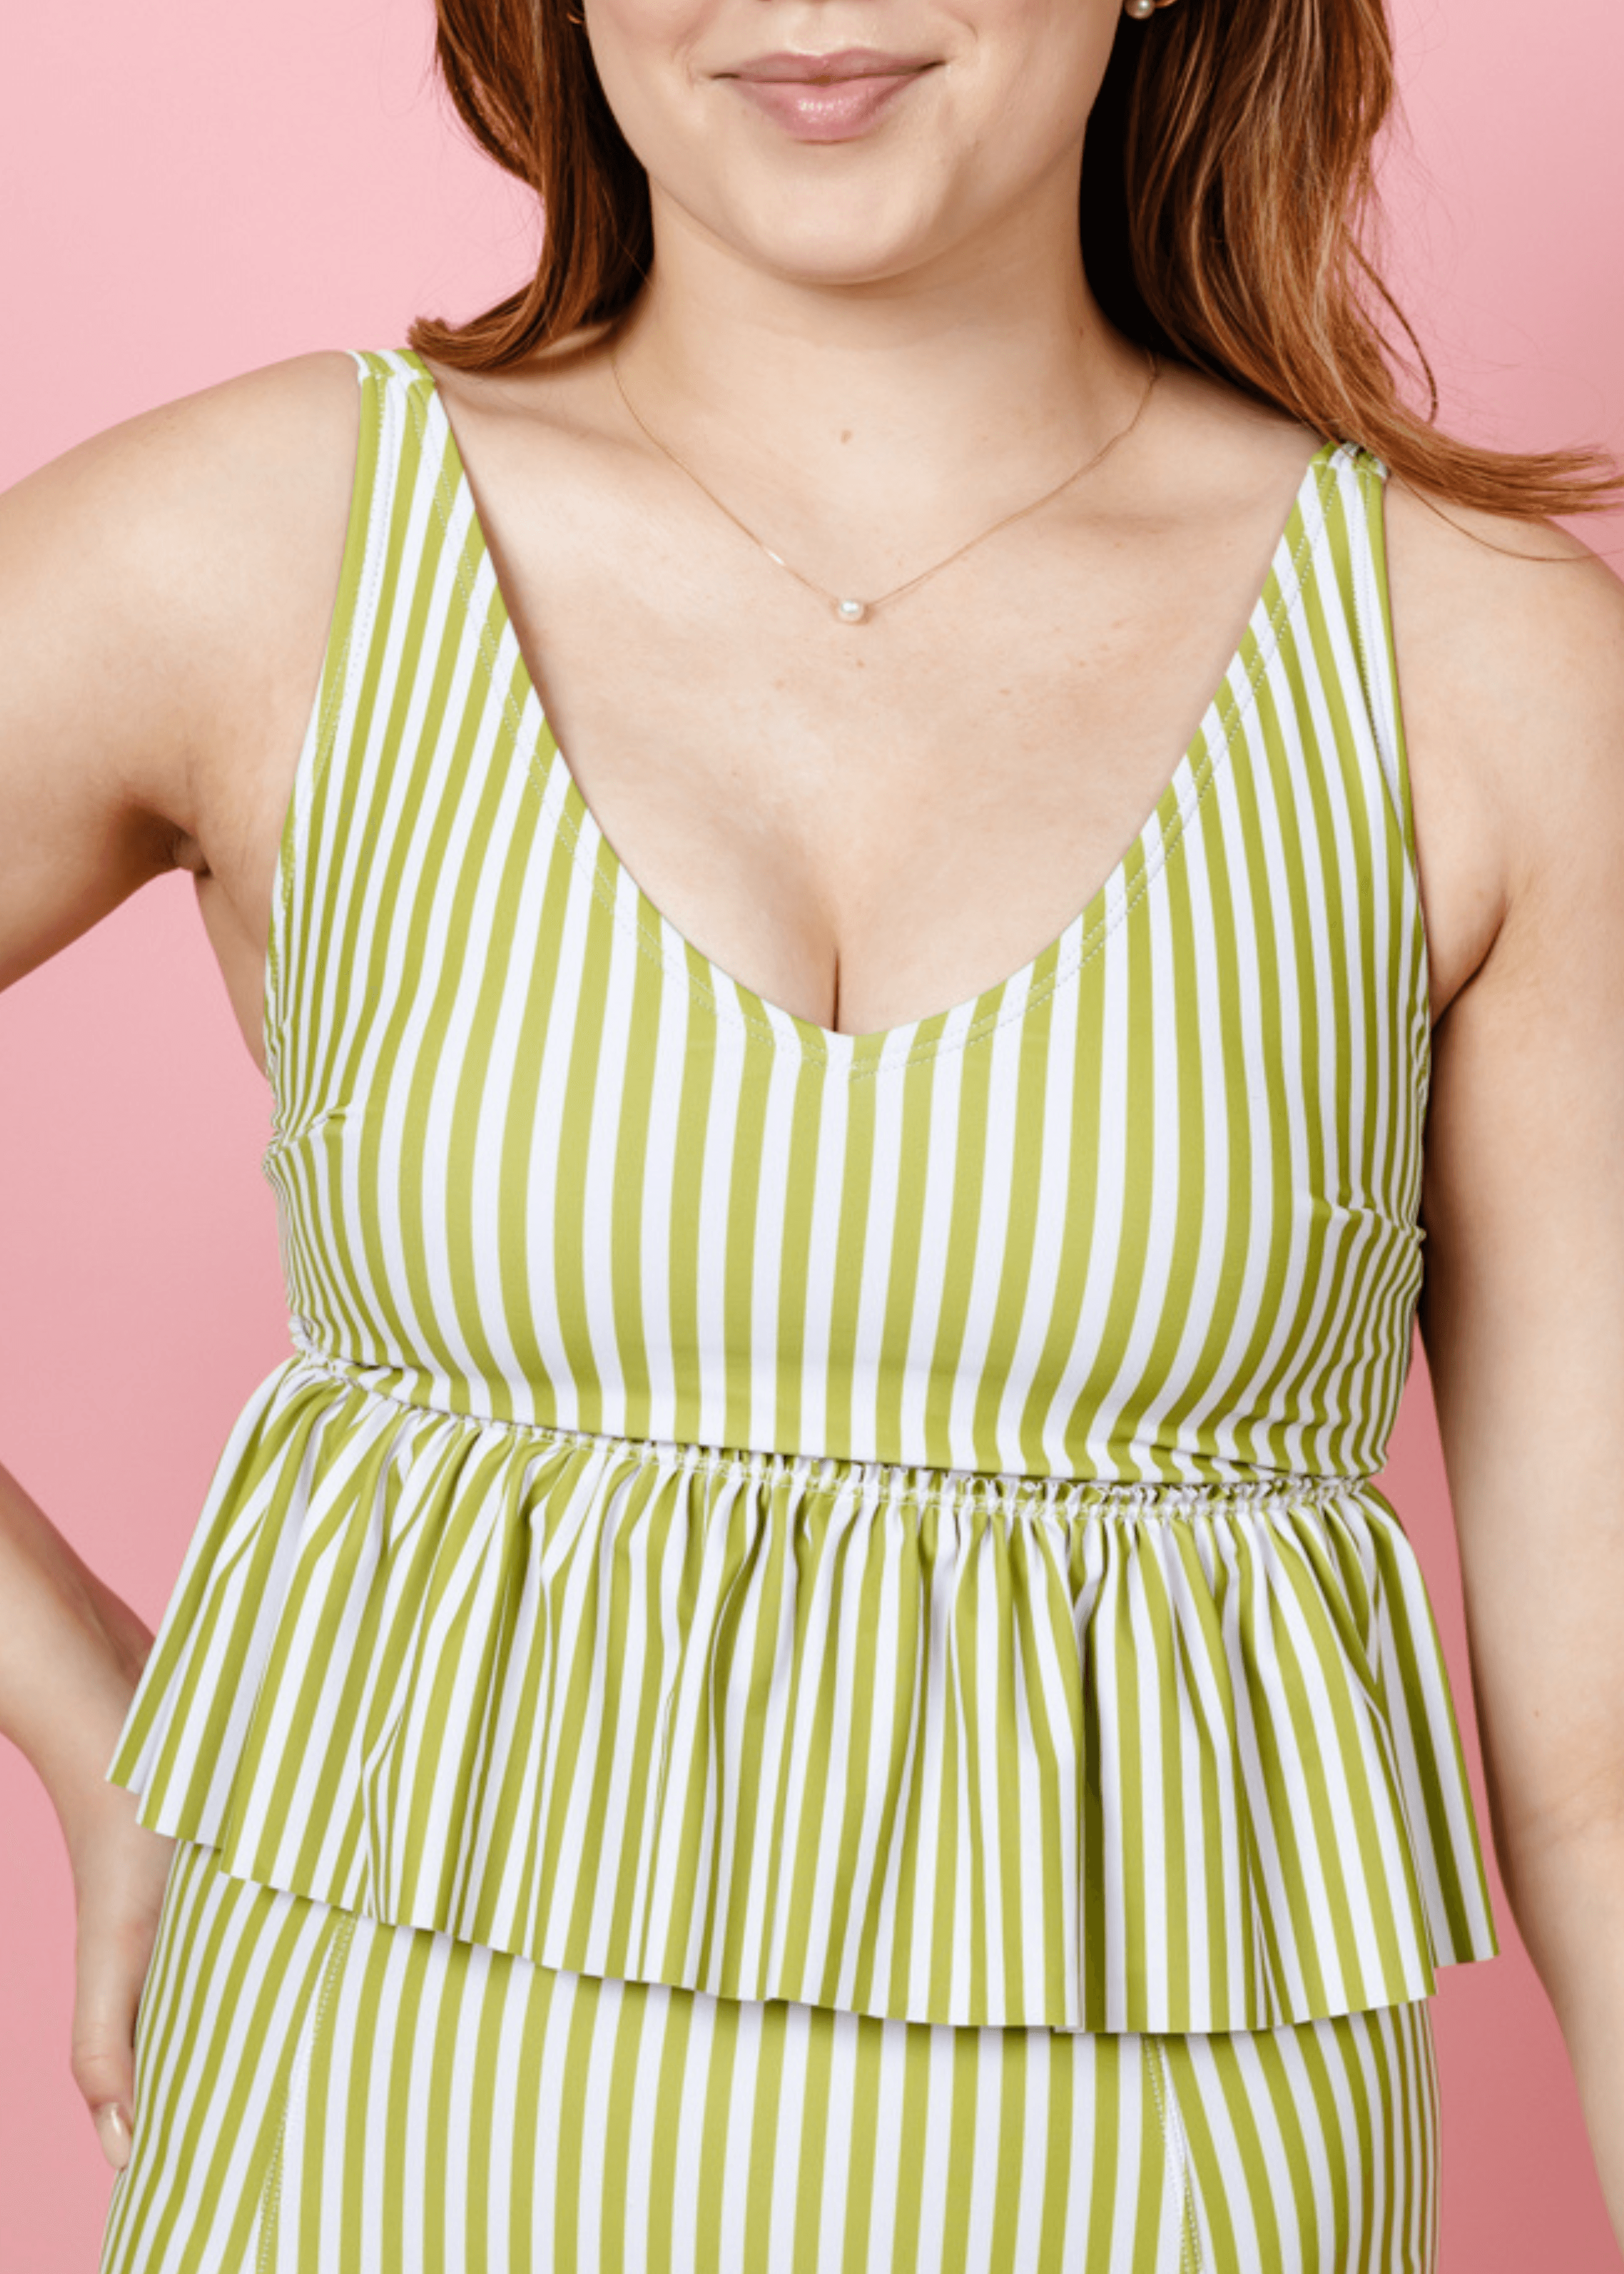 V-Neck Top | Pear Stripes - Kortni Jeane